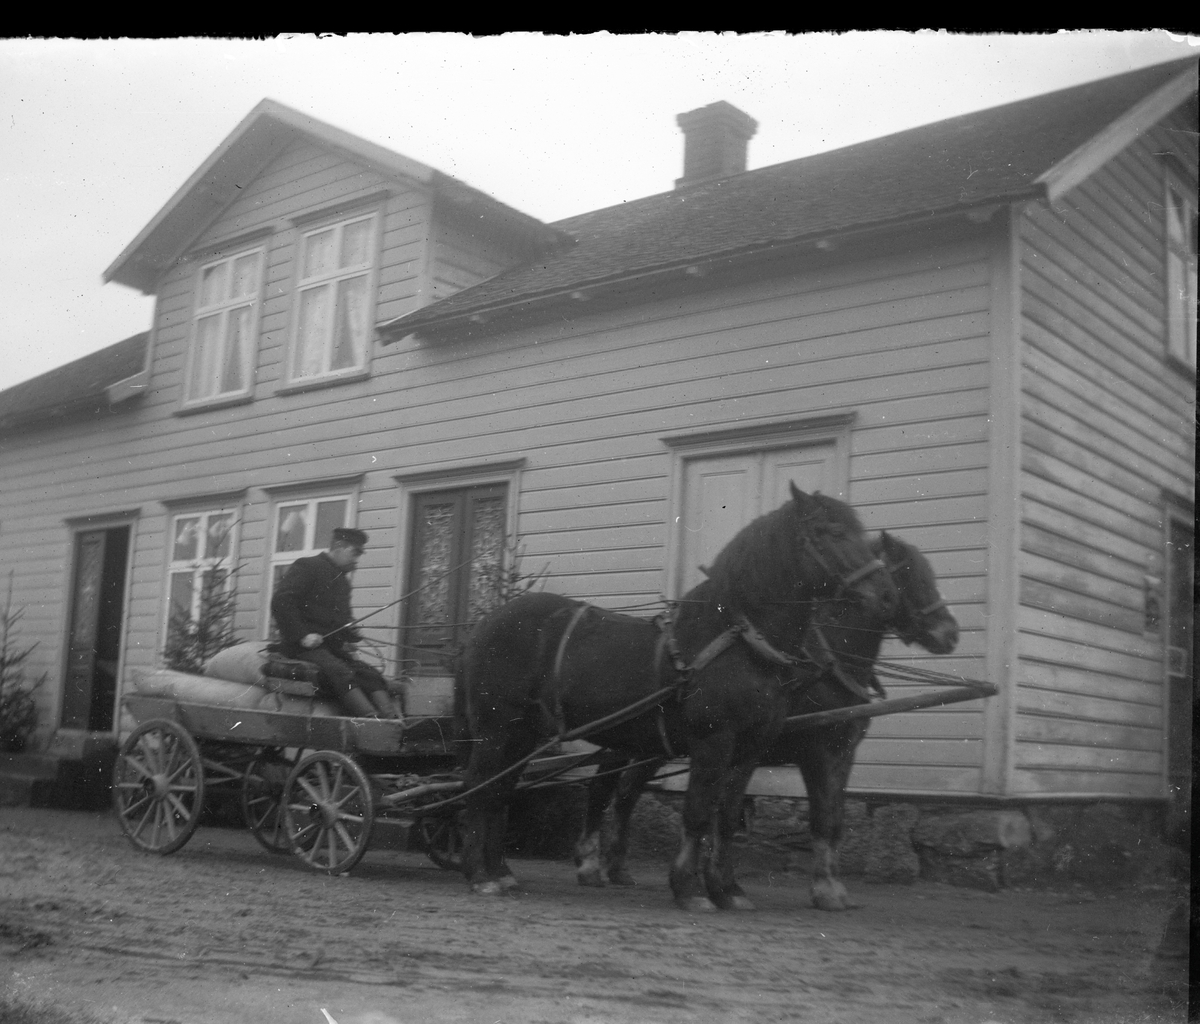 En man på kärra med säckar, dragen av två hästar. Ekipaget står utanför handelsboden i Sällstorp, Karlsberg. Kanske är det omkring jul eftersom det står flera granar utmed fasaden.